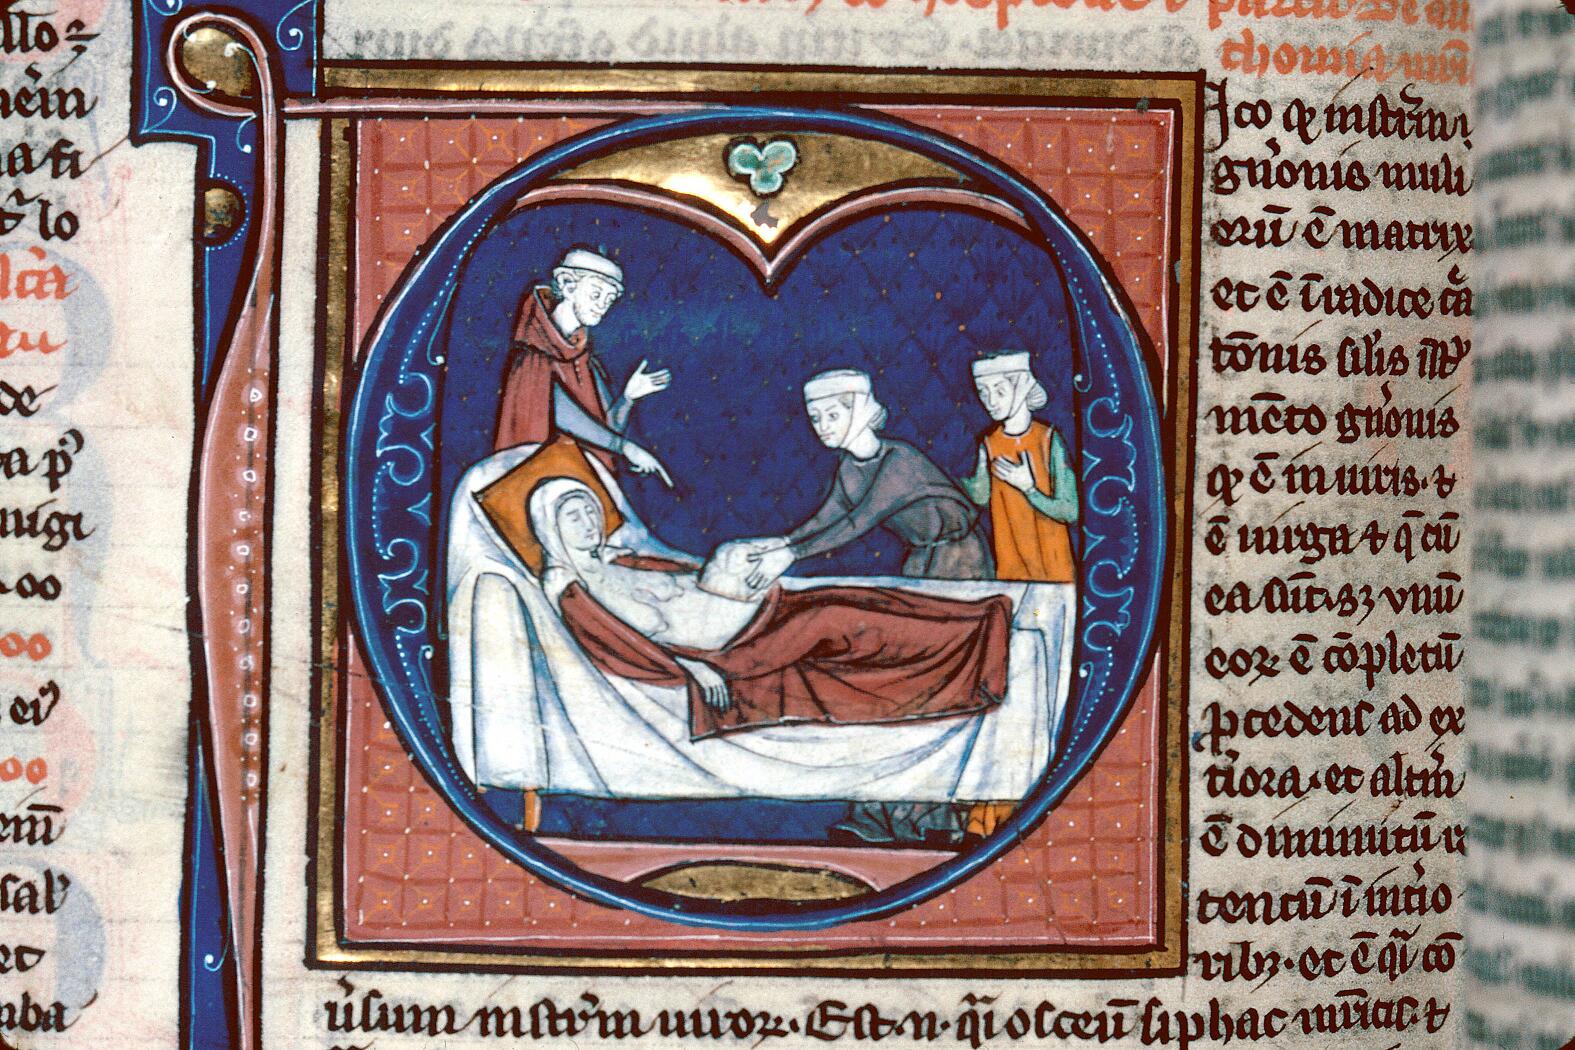 Avicenna, Canon medicinae. Paris 13th century